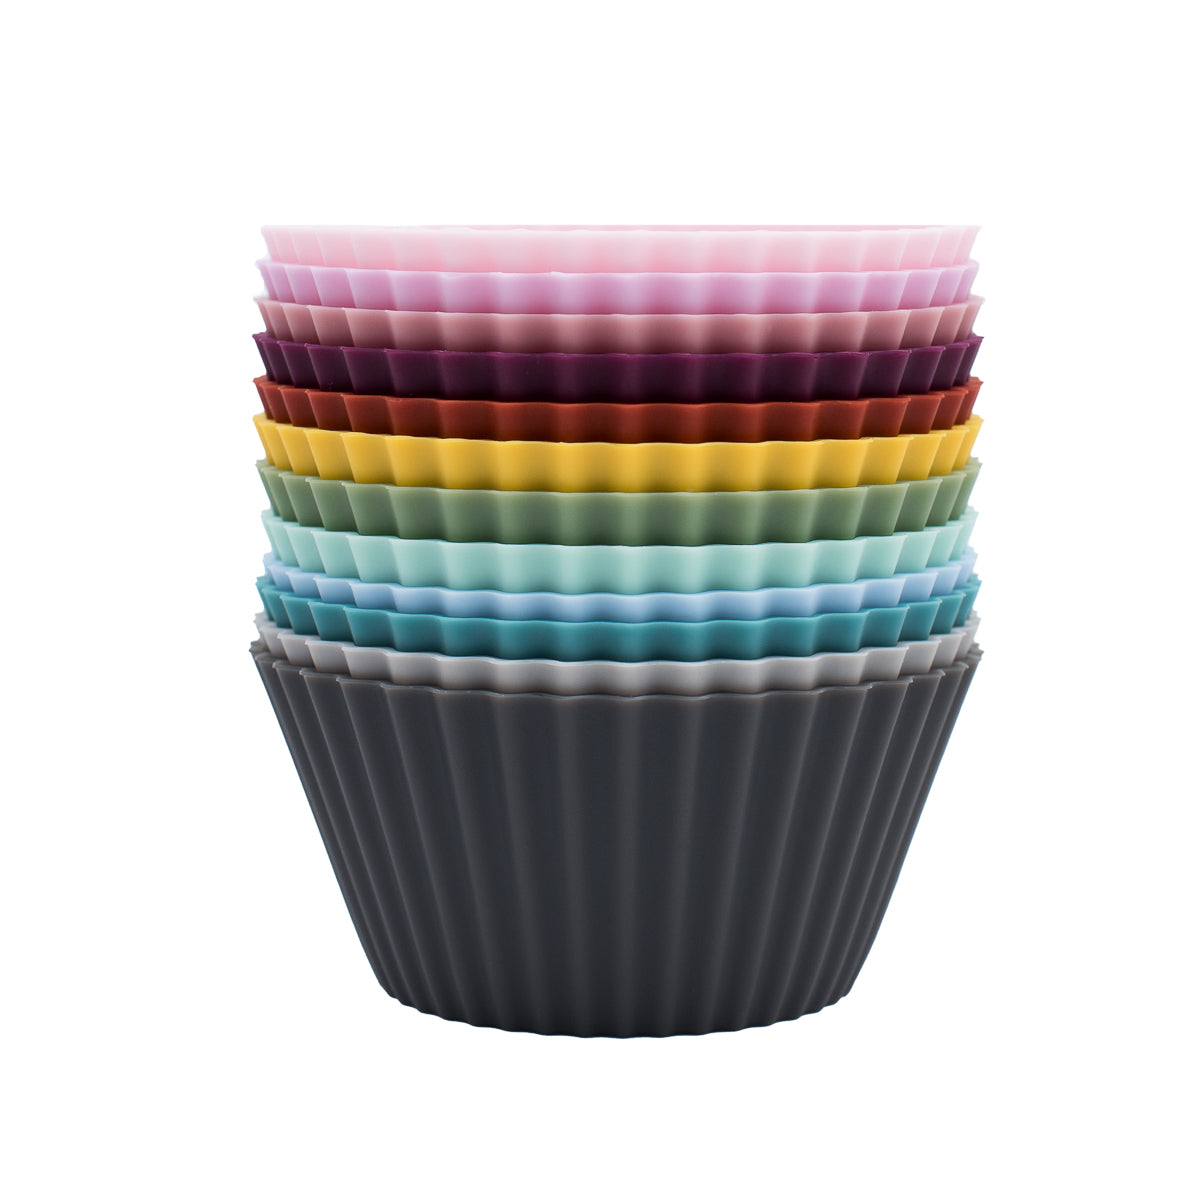 Silicone Muffin Cups